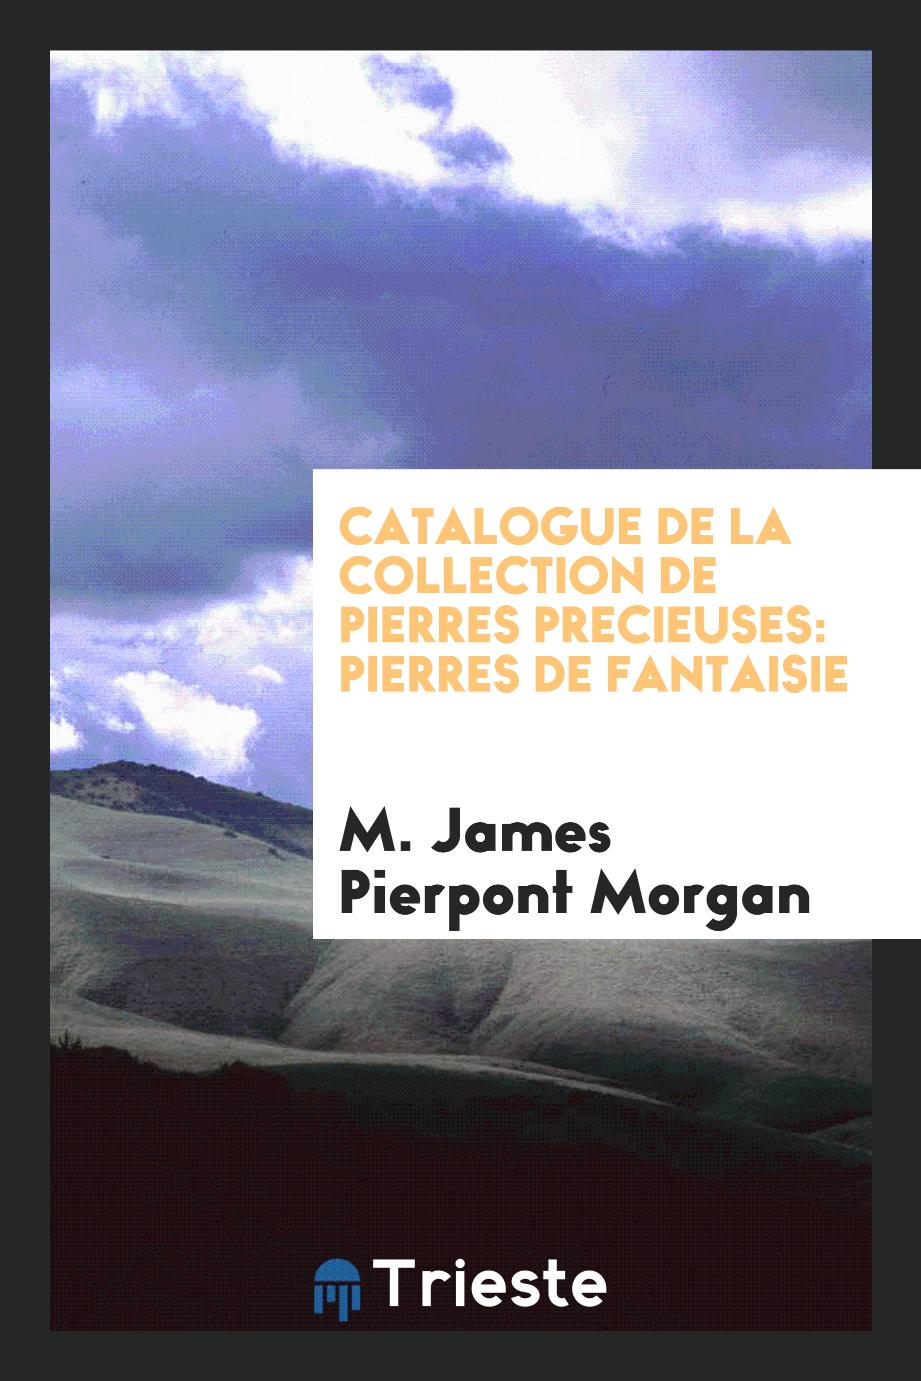 Catalogue de la Collection de Pierres Precieuses: Pierres de Fantaisie